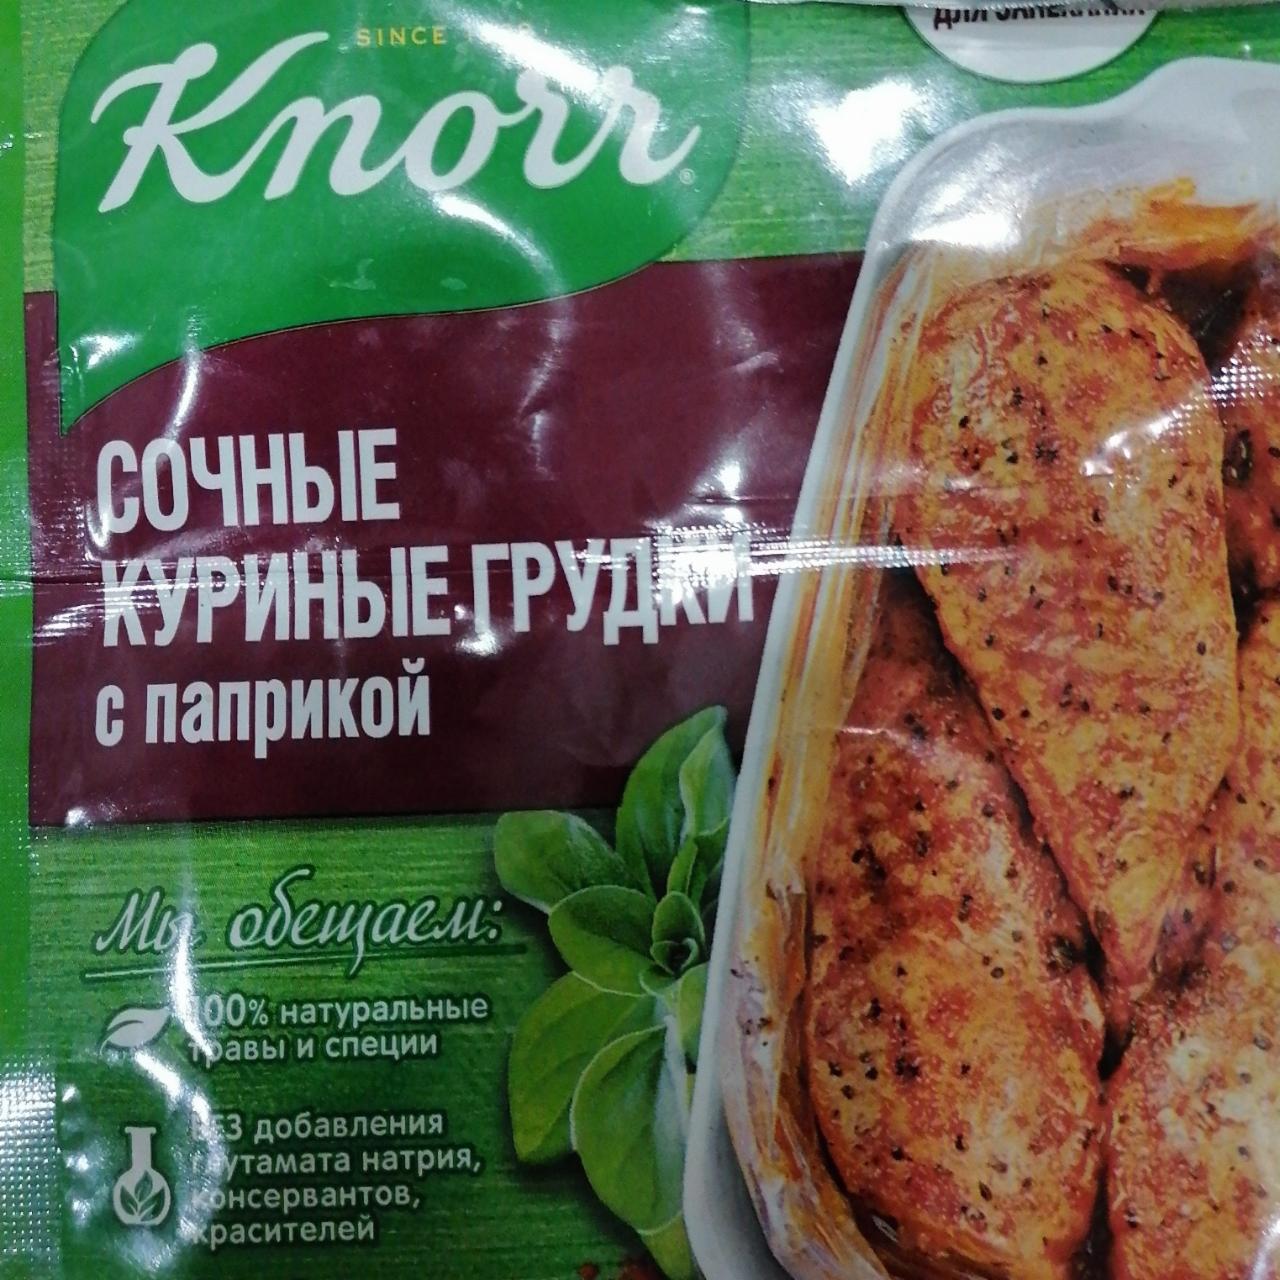 Фото - На второе сухая смесь для приготовления сочных куриных грудок с паприкой Knorr